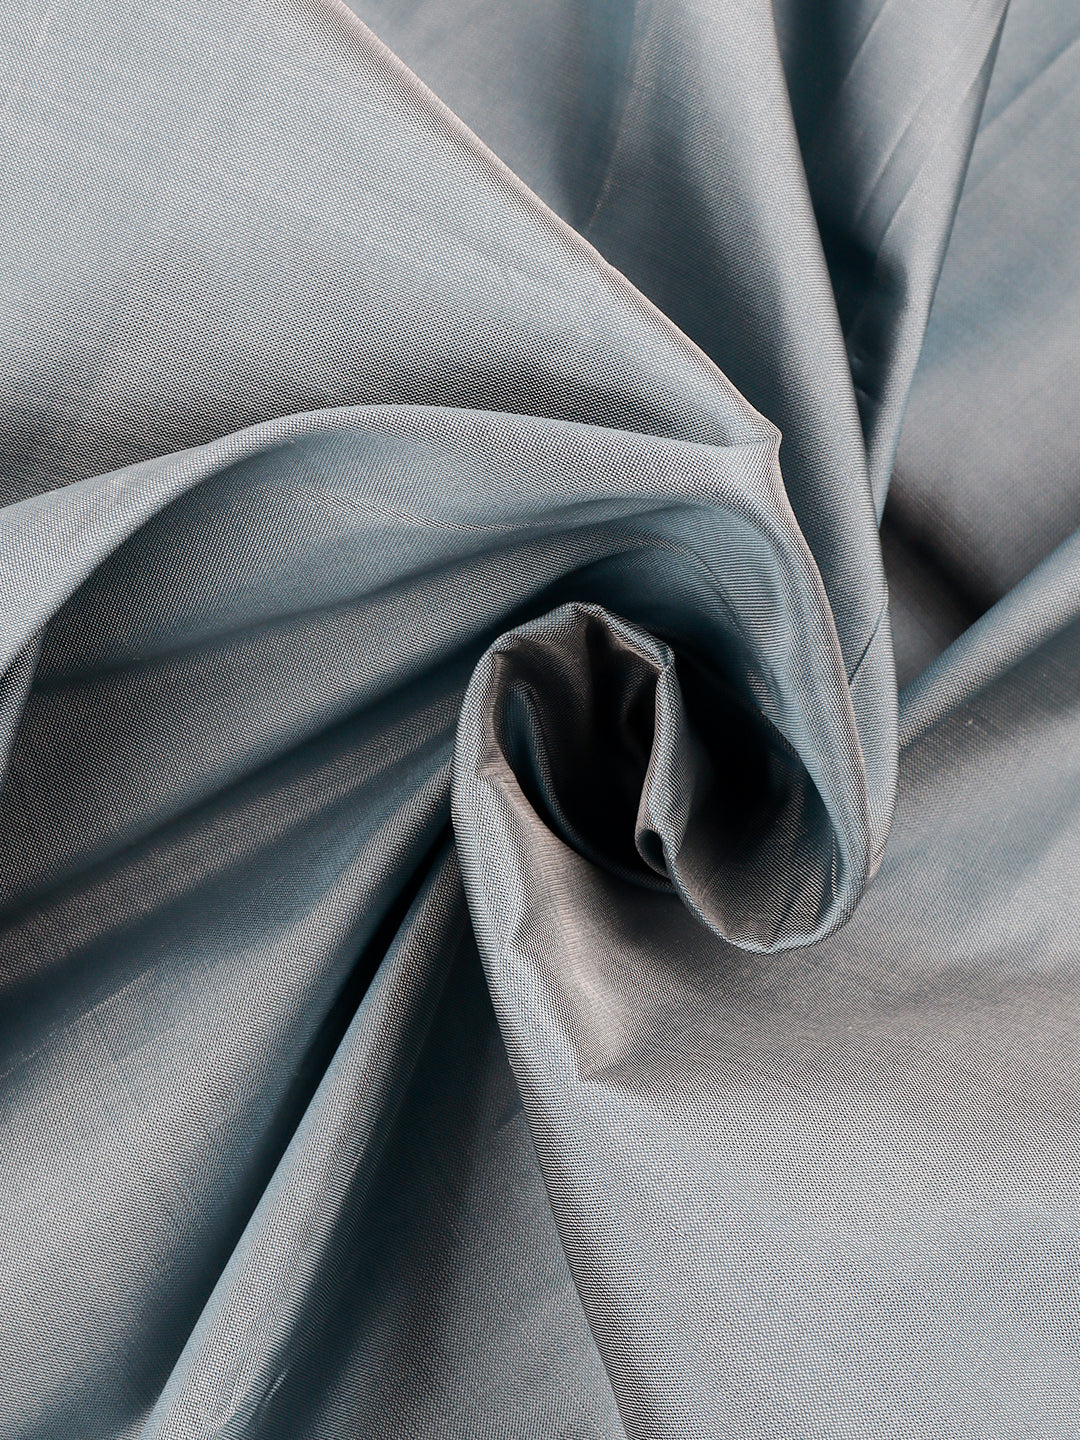 Mens Pure Silk Mixed Grey Shirt Fabric-Zoom view